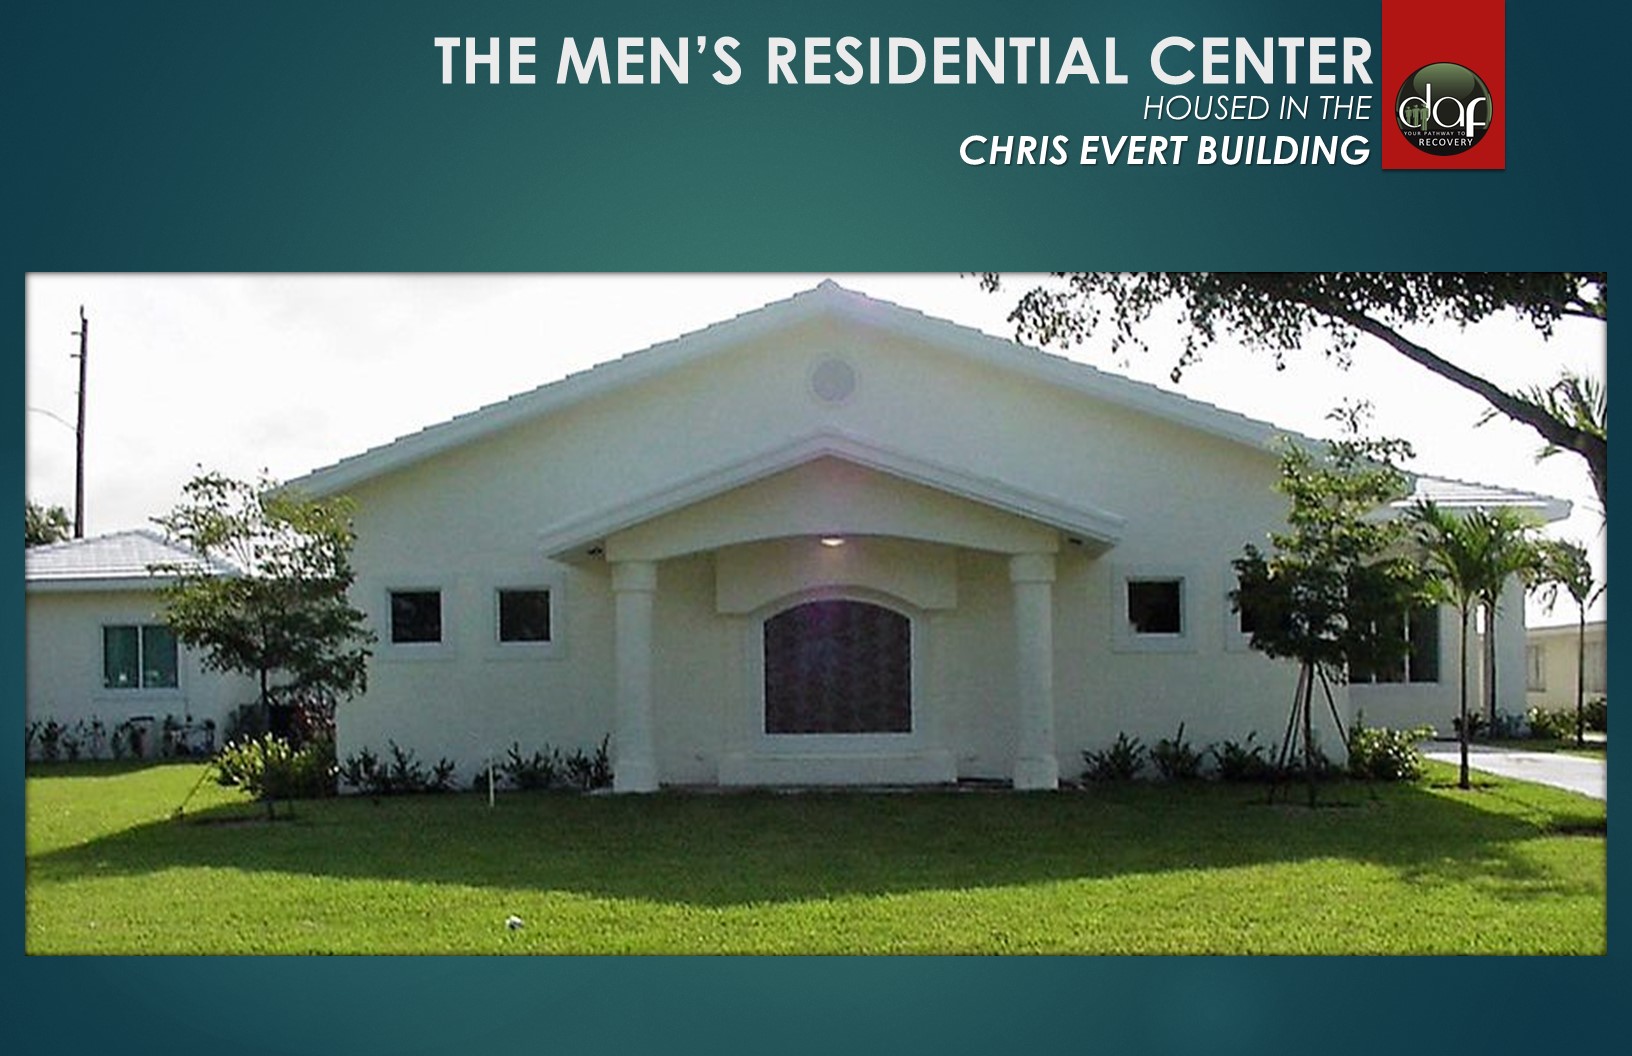 Men's Residential'